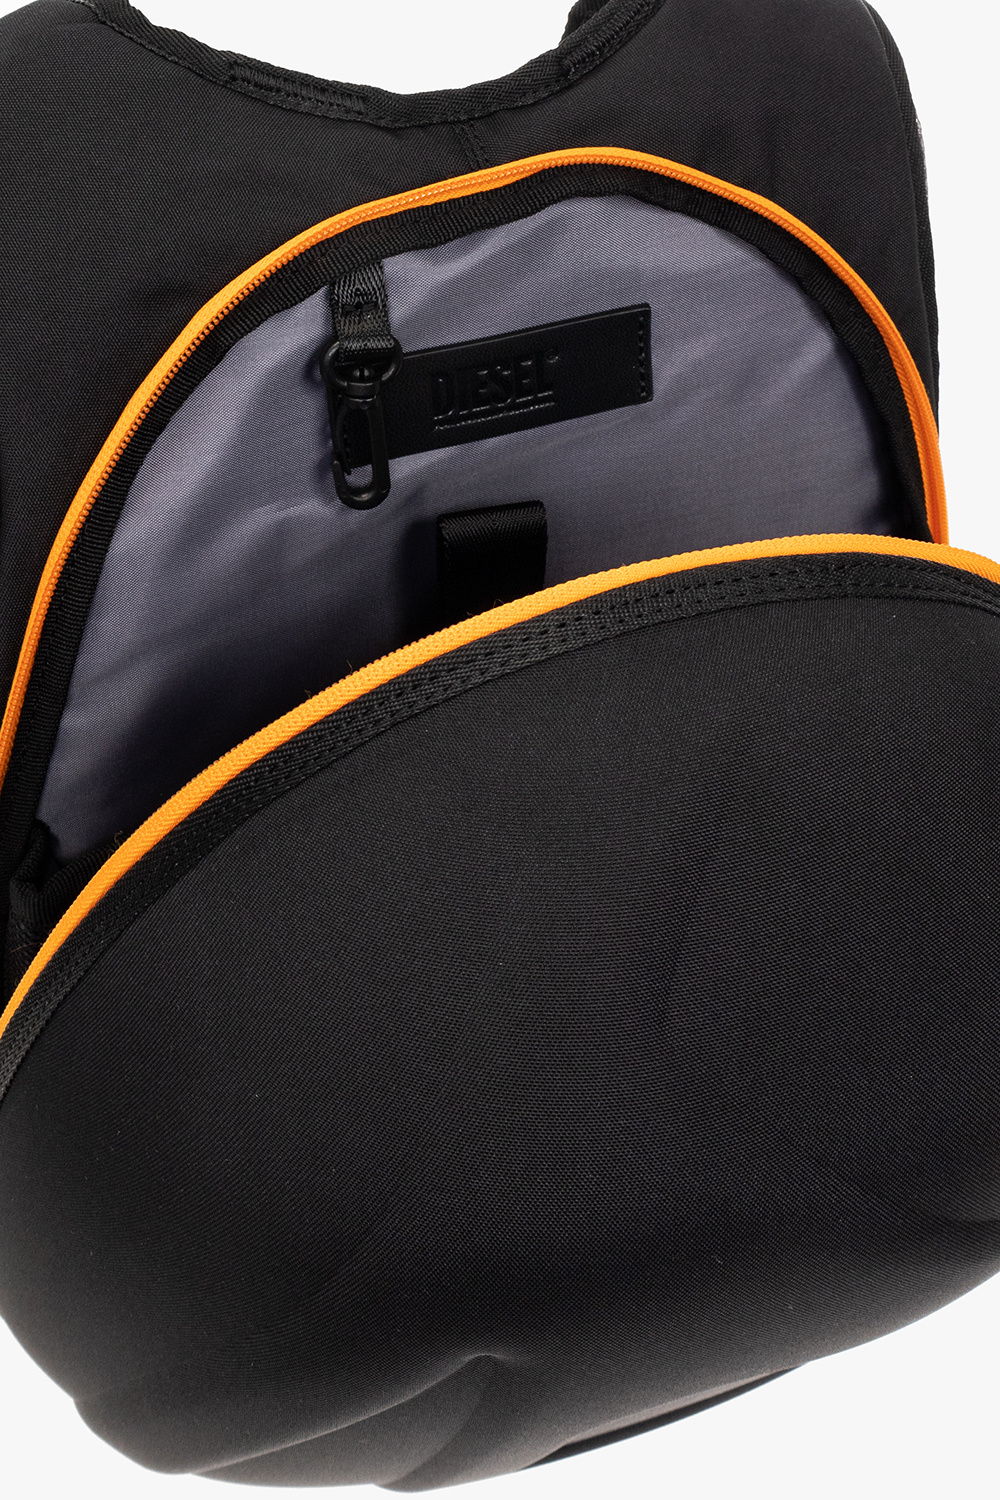 Orange Reversible belt FERRAGAMO - Vitkac TW